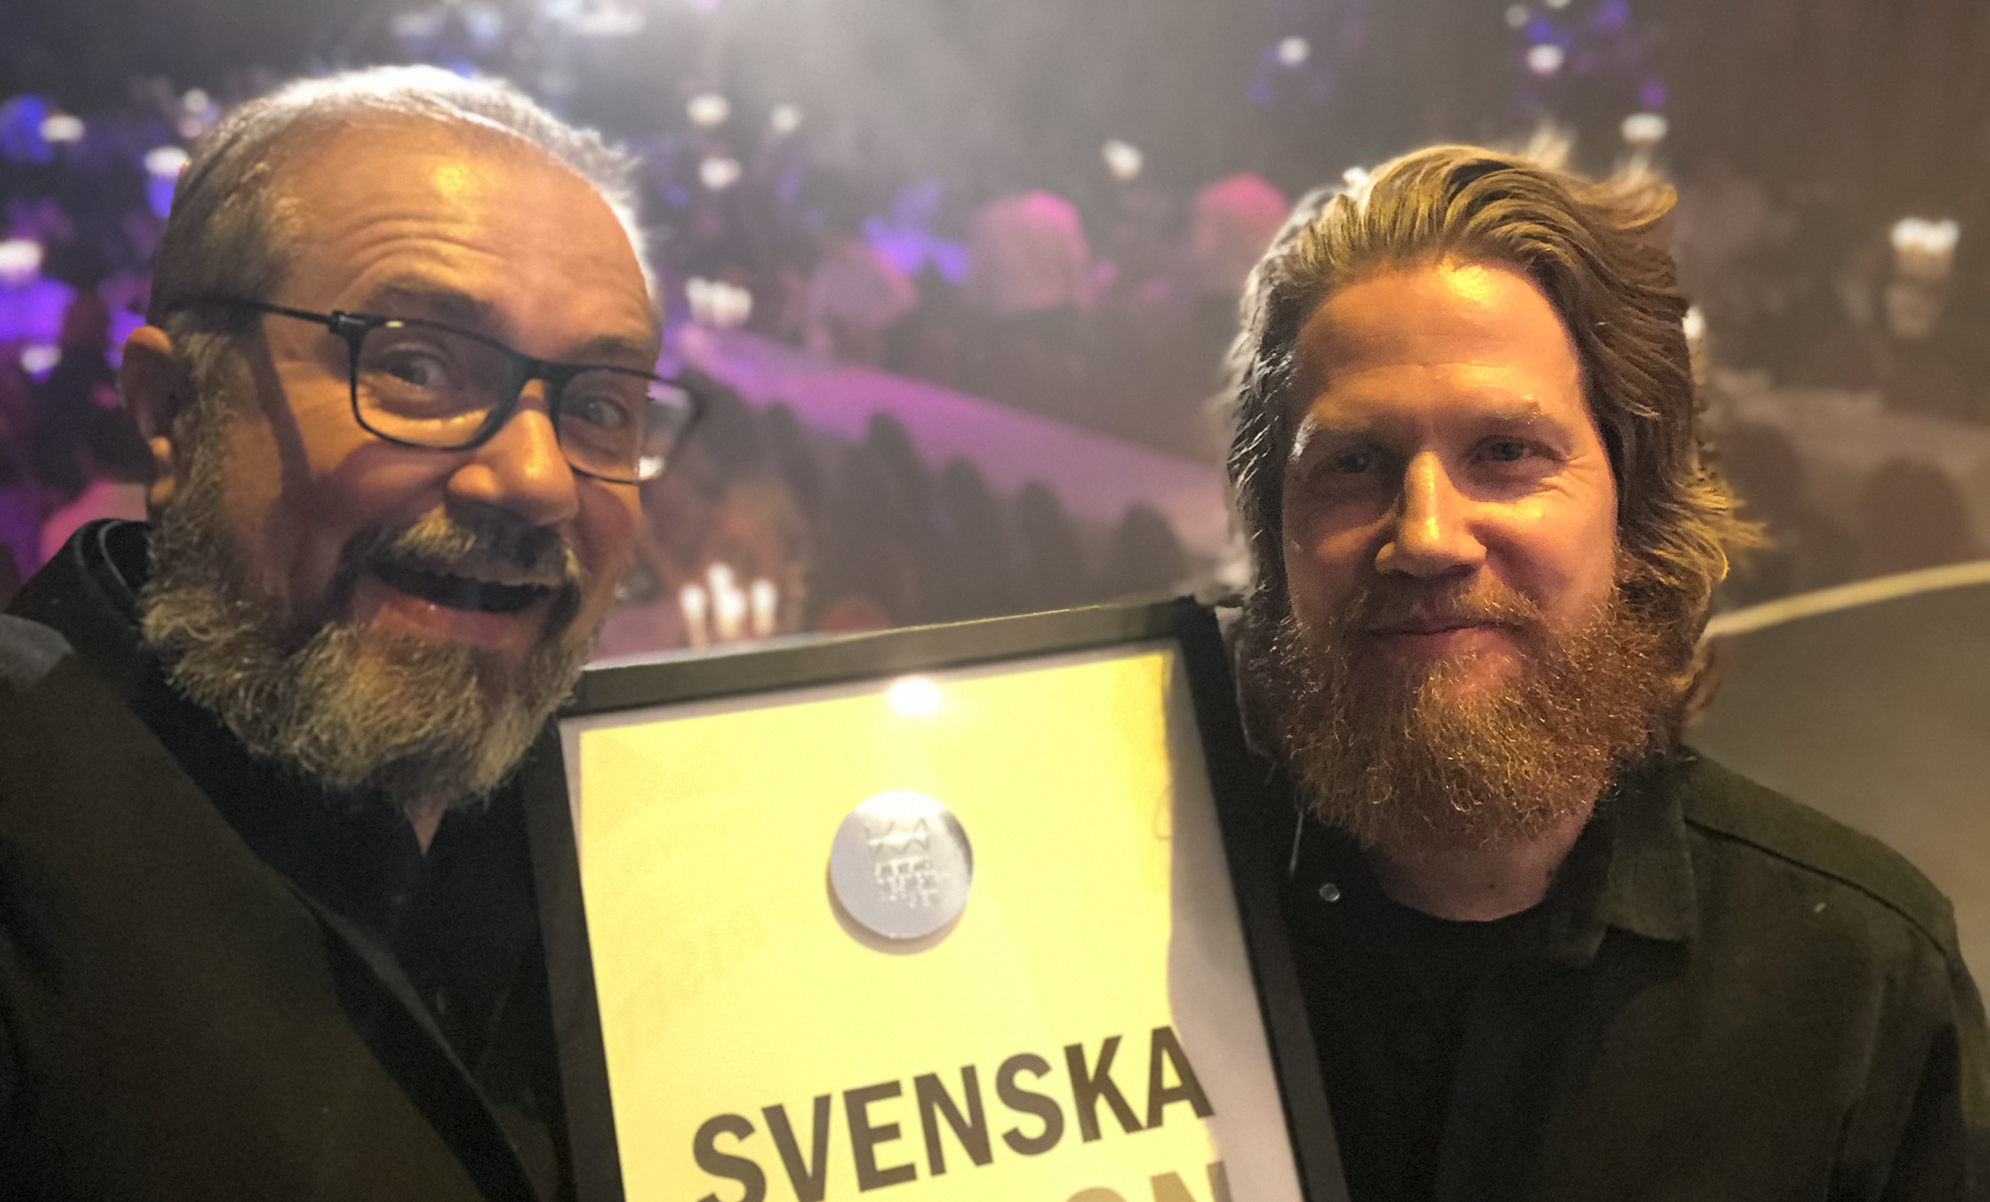 Ivan Matanovic och art director Martin Johansson poserar med svenska design priset